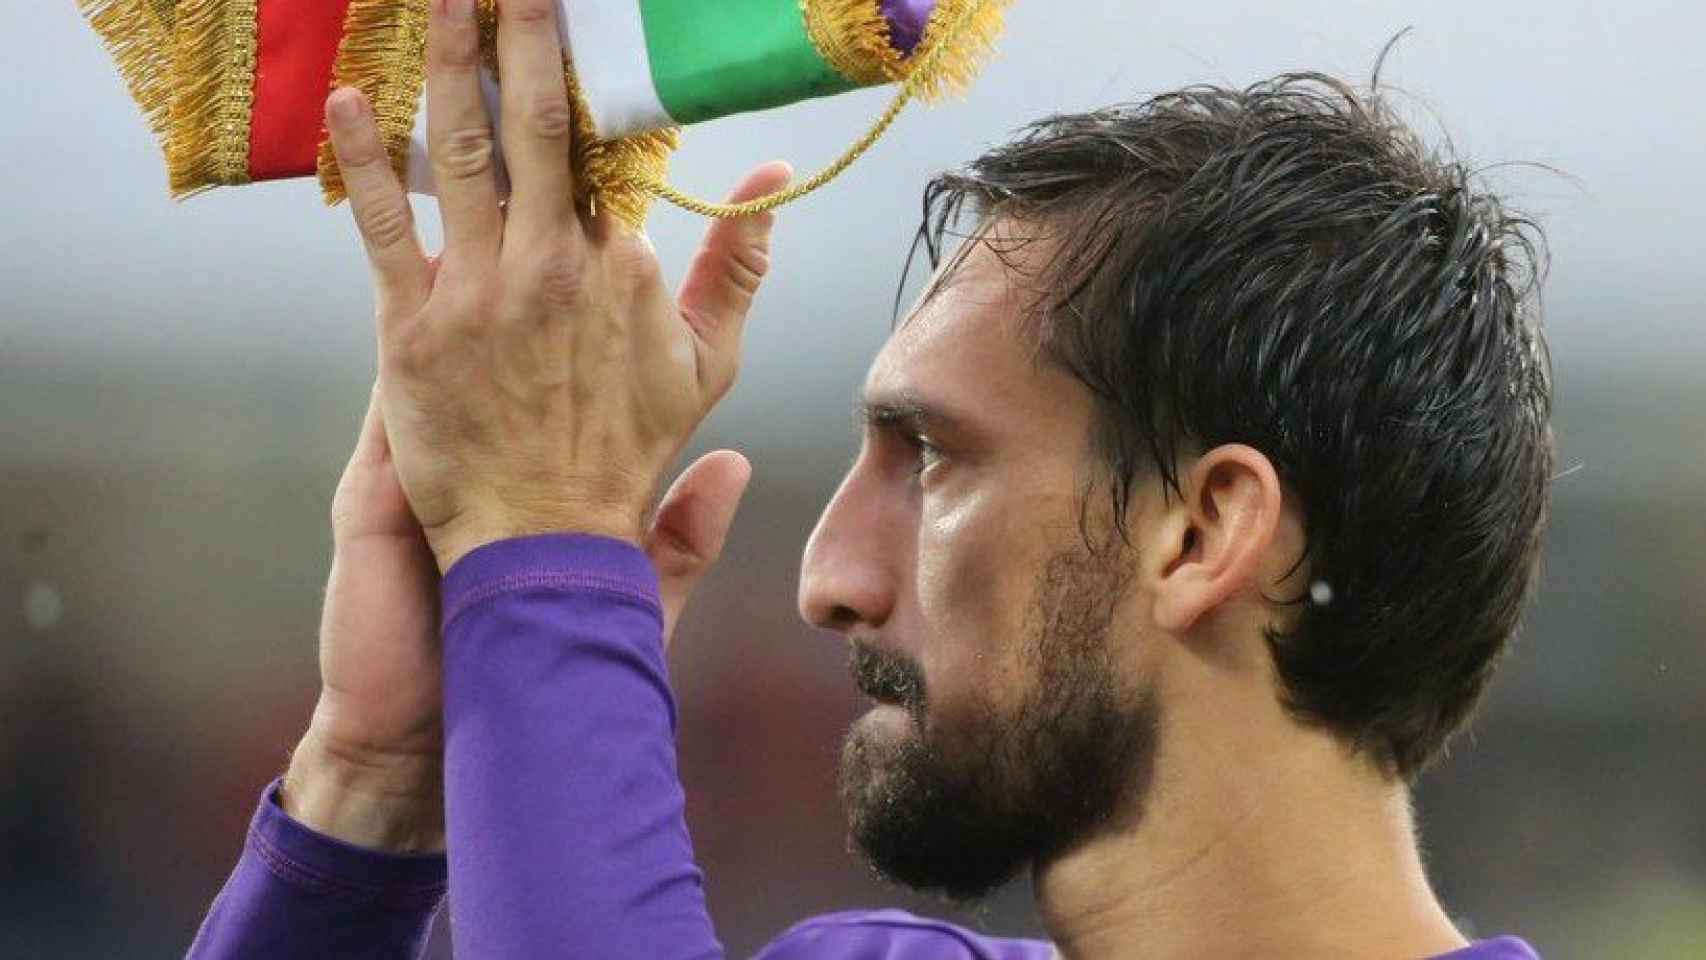 Astori, capitán de la Fiorentina, muere a los 31 años